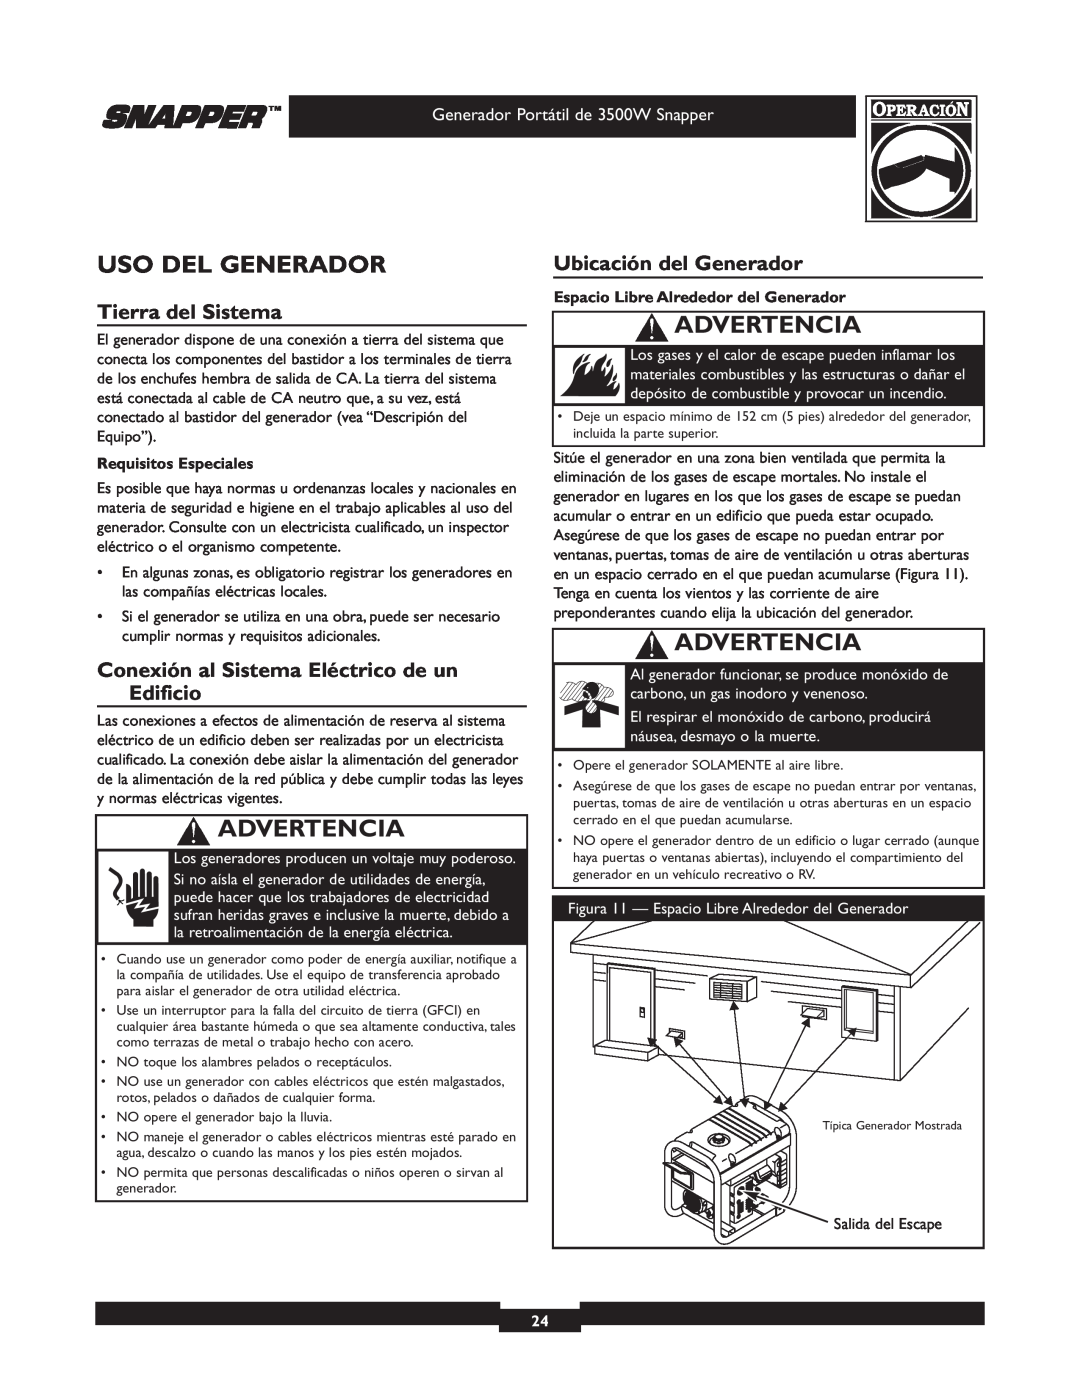 Snapper 030214 manual Uso Del Generador, Tierra del Sistema, Conexión al Sistema Eléctrico de un Edificio, Advertencia 